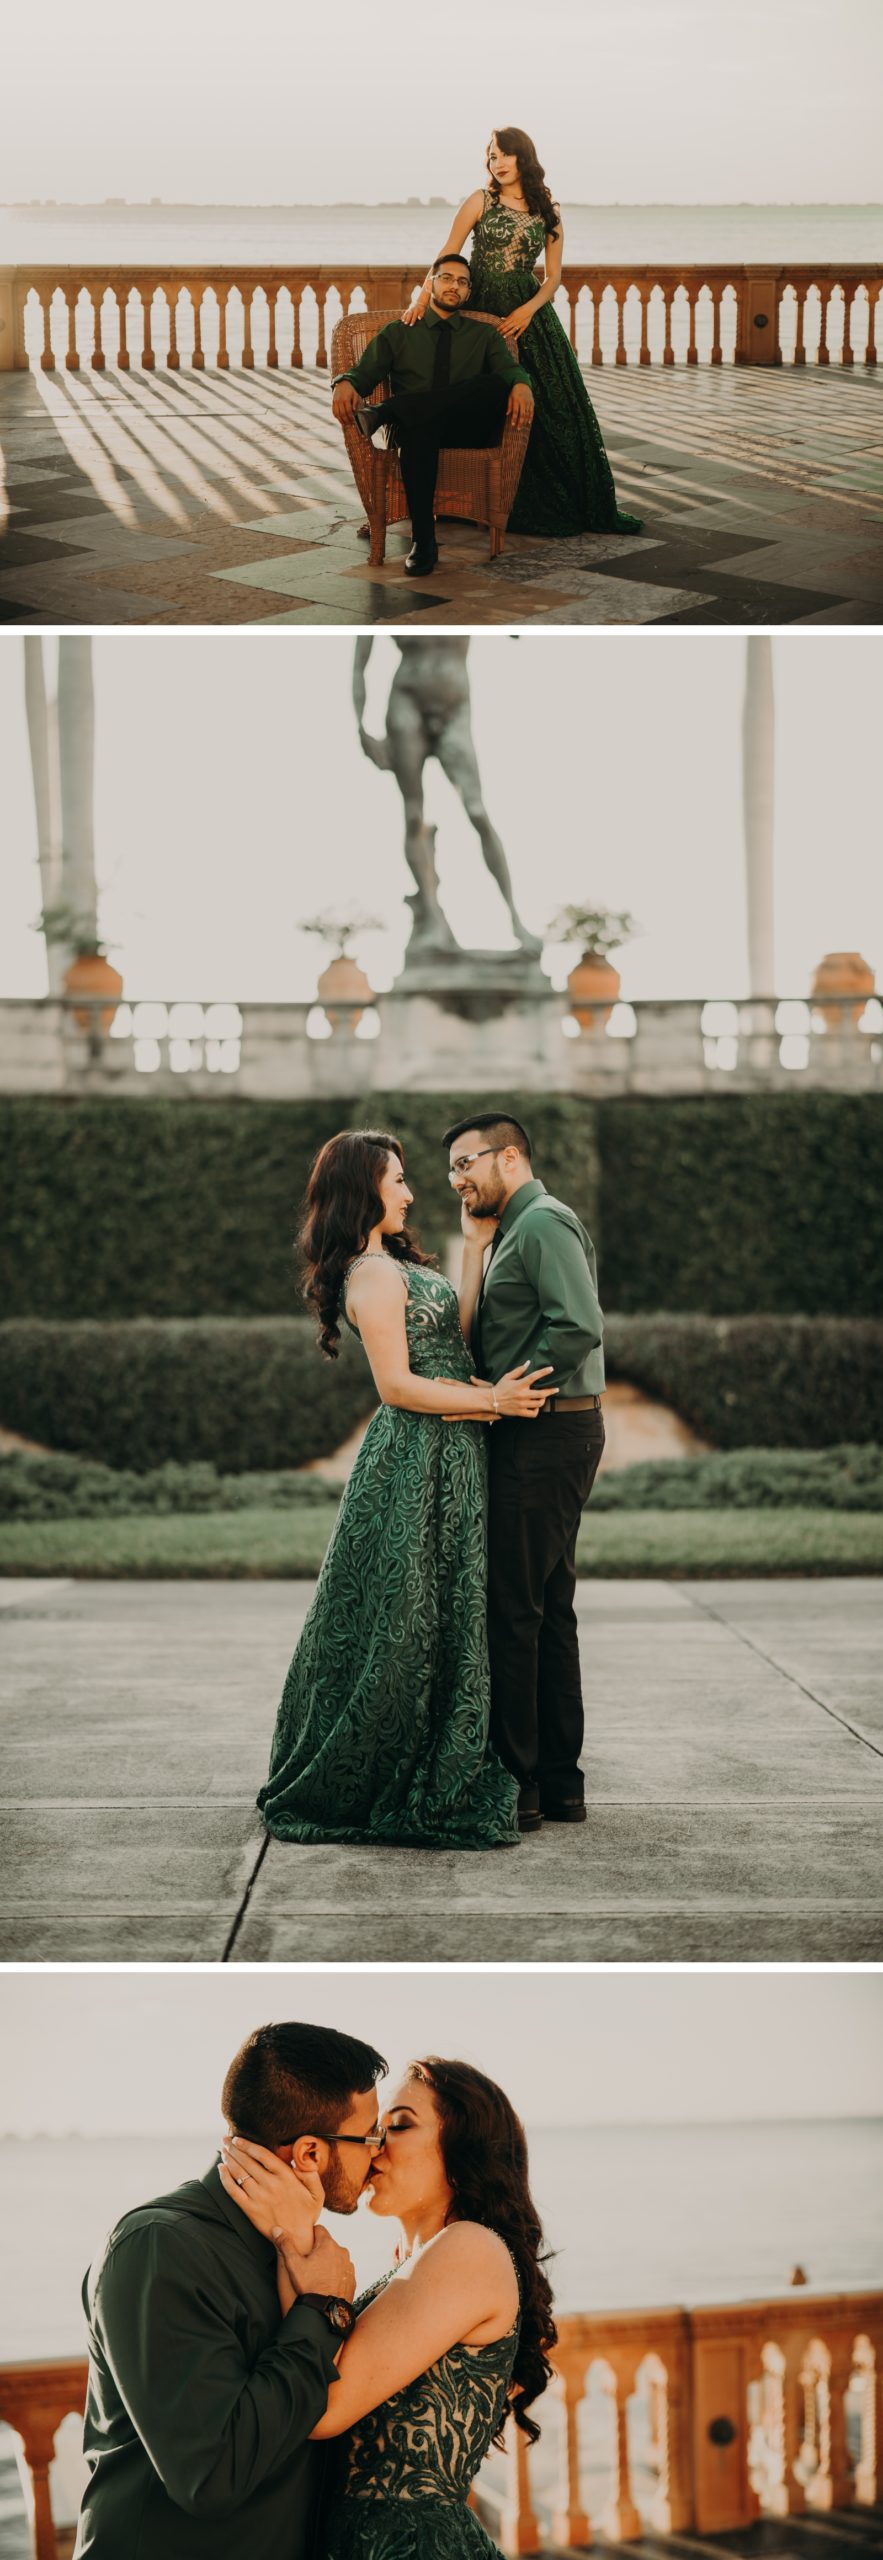 emerald green engagement dress, sarasota engagement session, juju photography Sarasota engagement photography